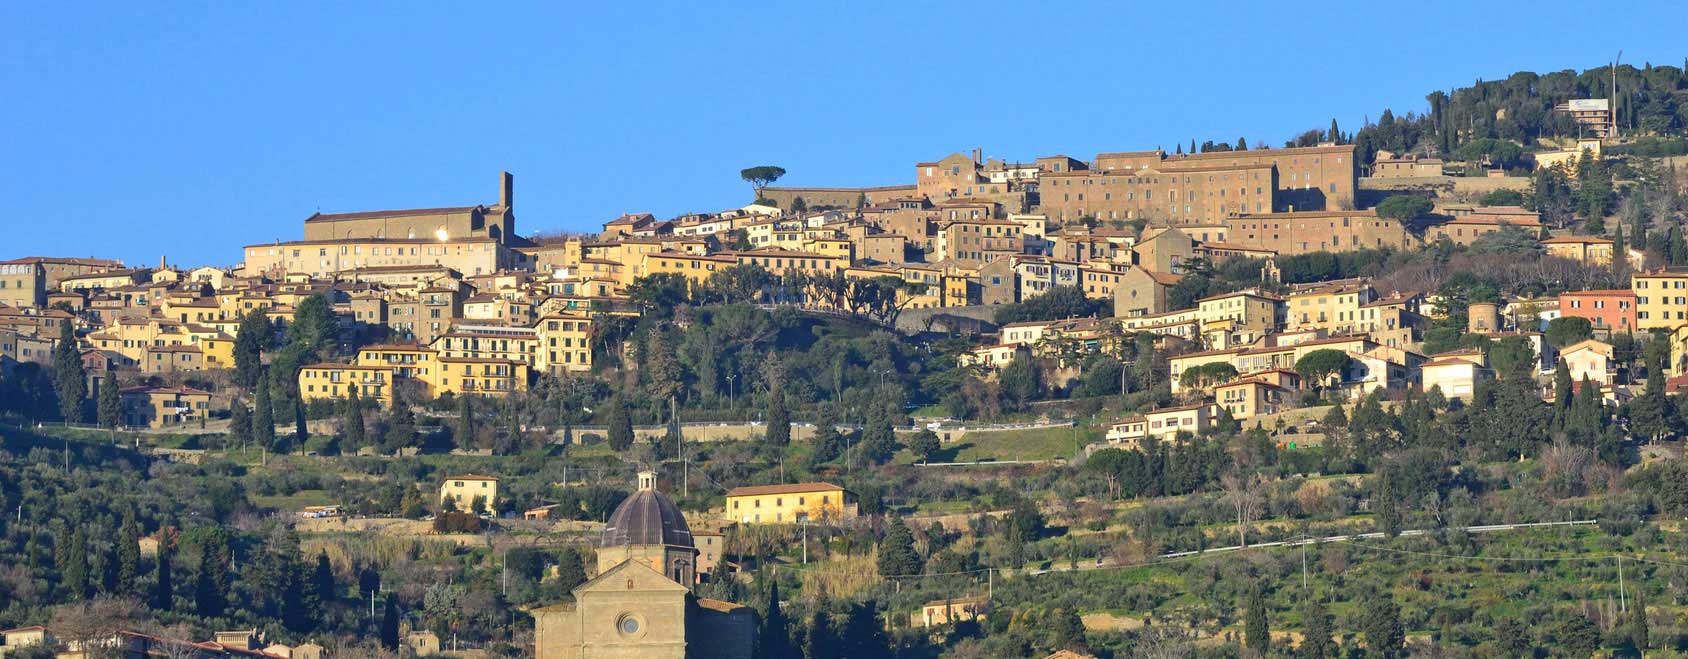 Ferienwohnungen und Ferienhäuser in Cortona / Region Arezzo